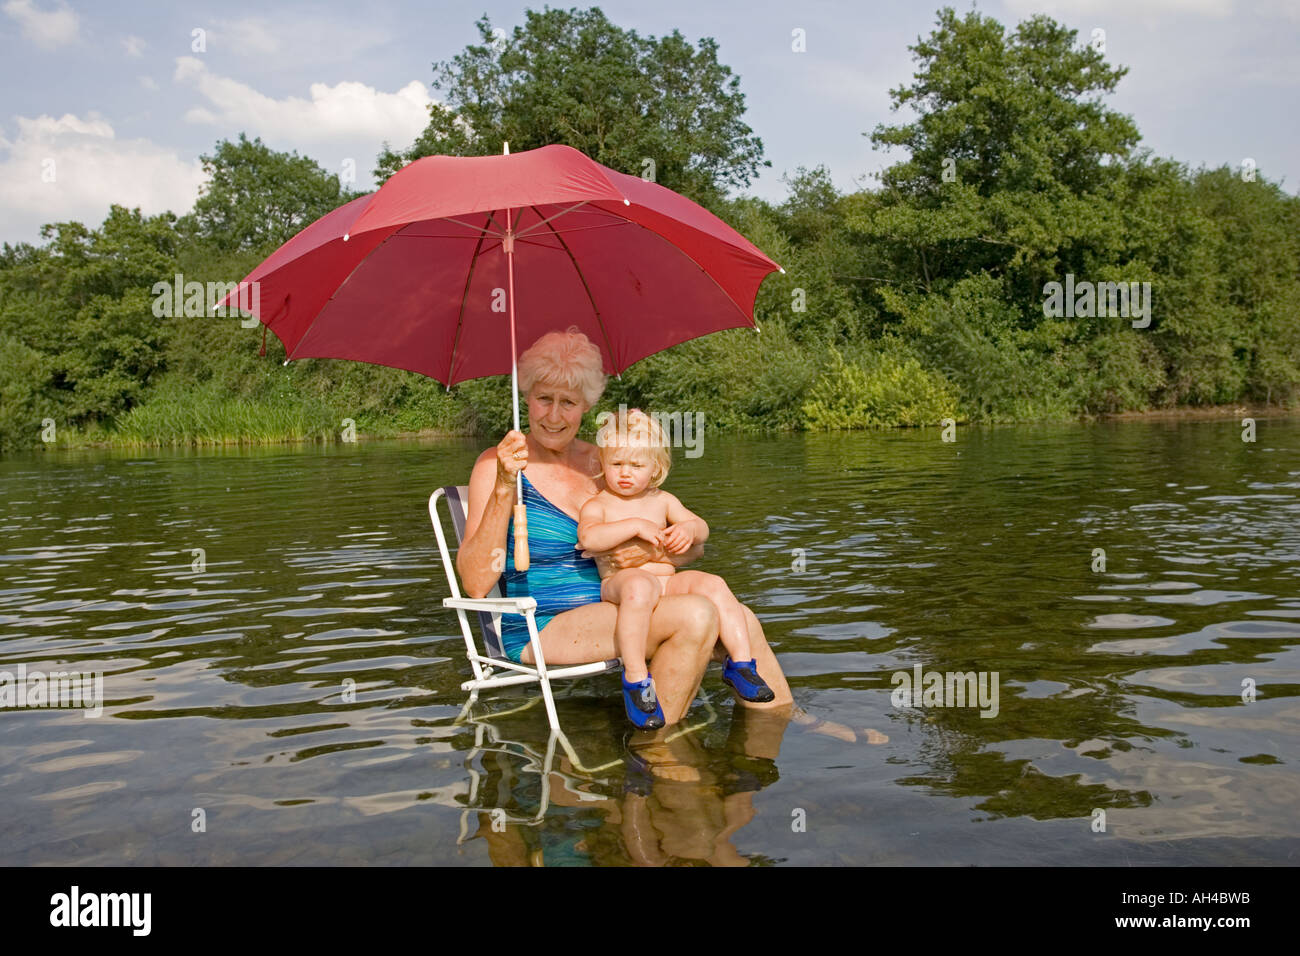 Oma und Baby-sitting auf Picknick Stuhl im Fluss Wye Holding roten Regenschirm Abkühlung an heißen Tagen UK Stockfoto